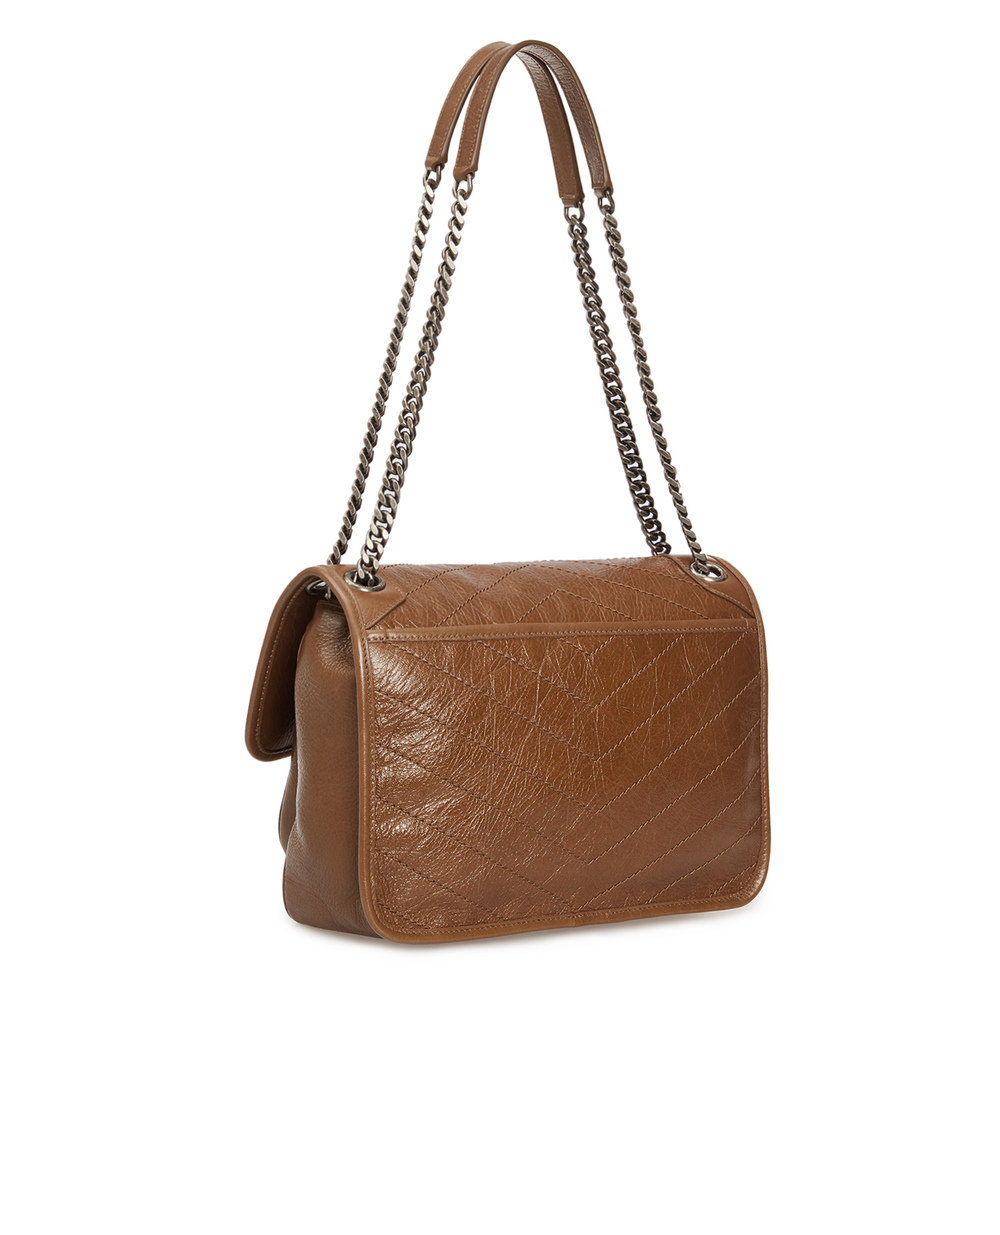 Кожаная сумка Niki Medium Saint Laurent 633158-1YG04, коричневый цвет • Купить в интернет-магазине Kameron